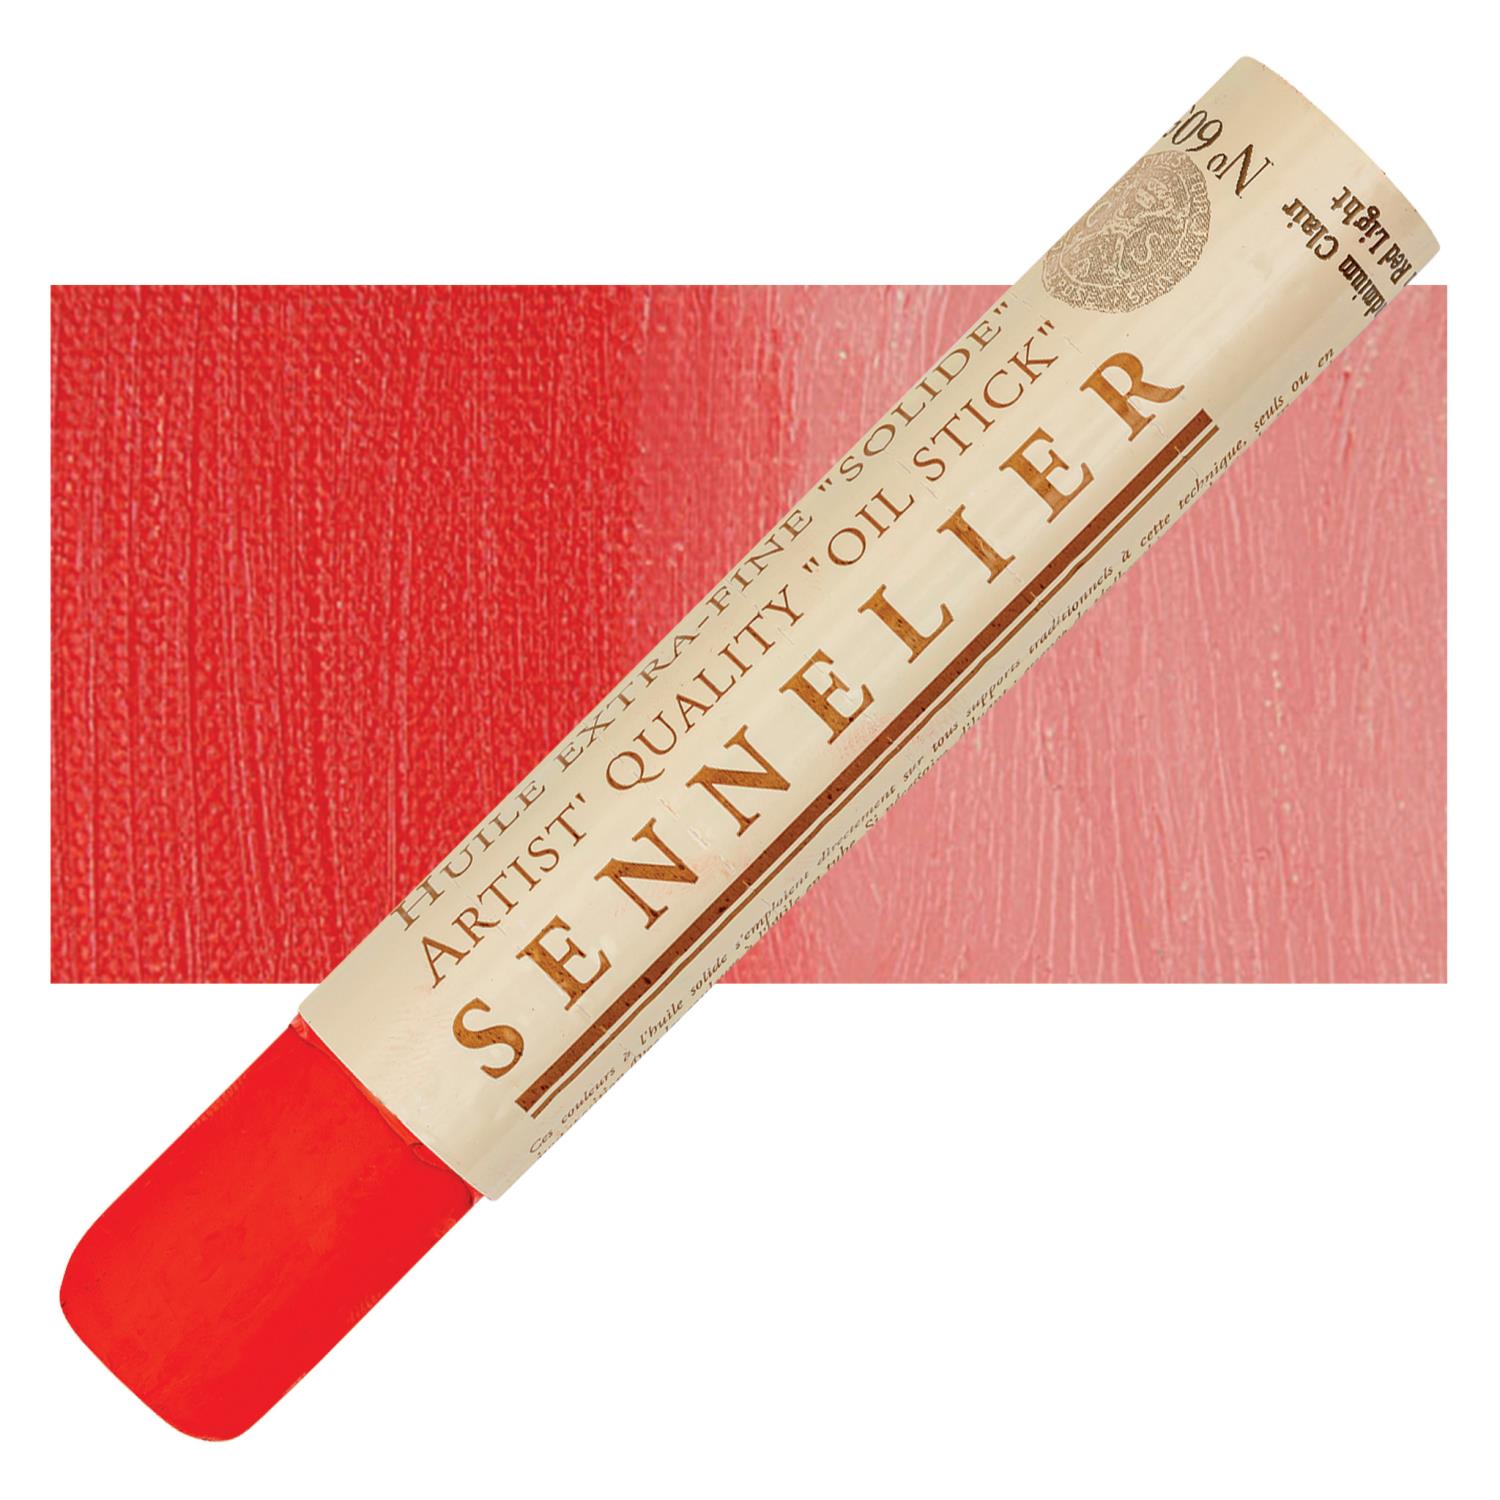 Sennelier Artist Oil Stick 38ml - 605 Cadmium Red Light S3